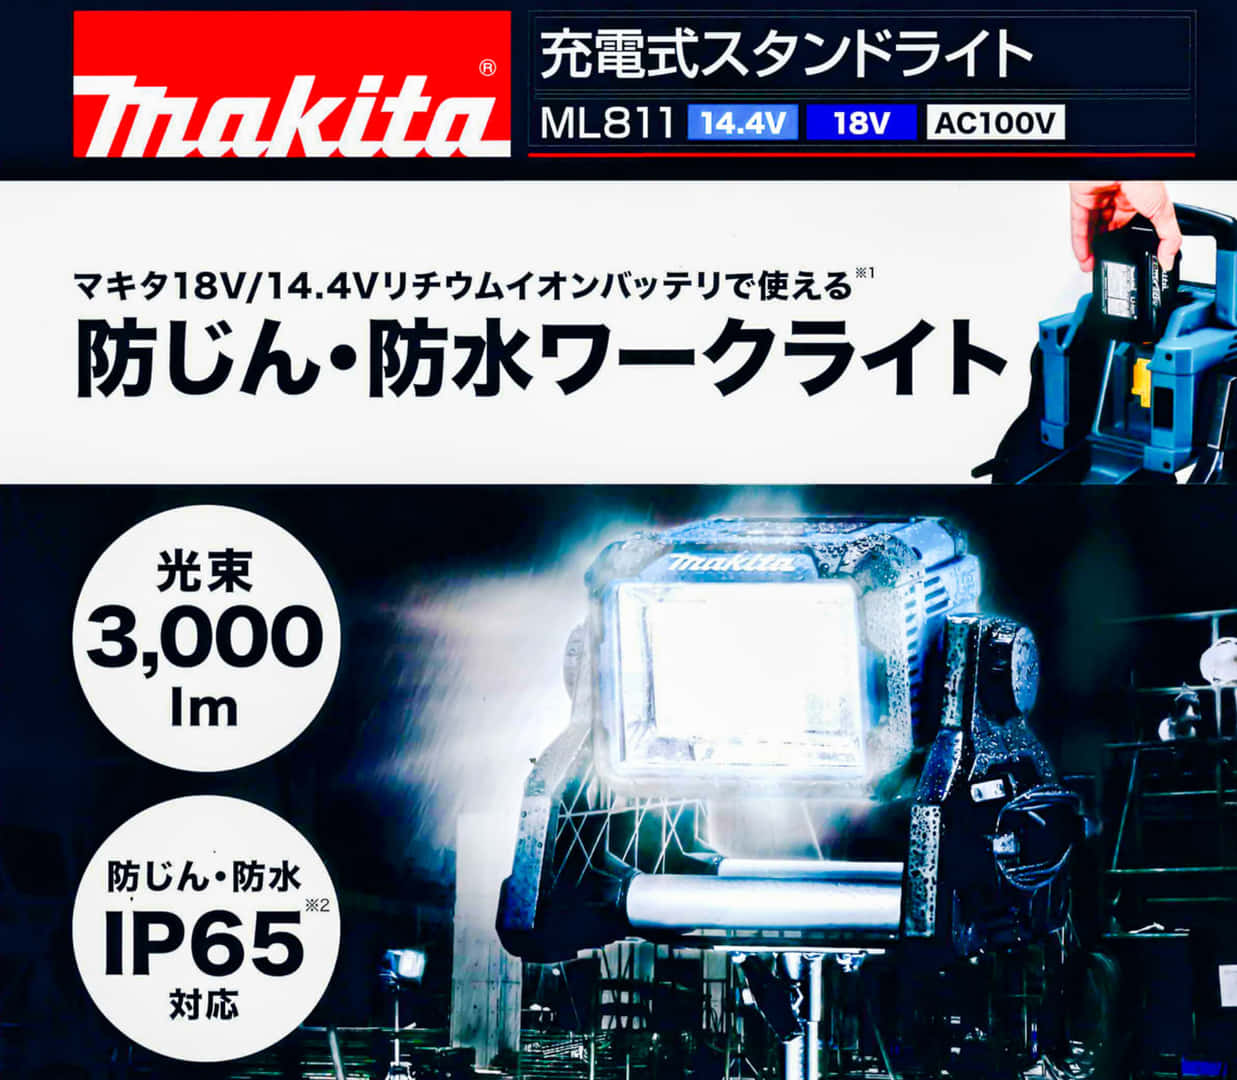 マキタ  ML811 充電式ライト、3,000lmの大光量新型ライト